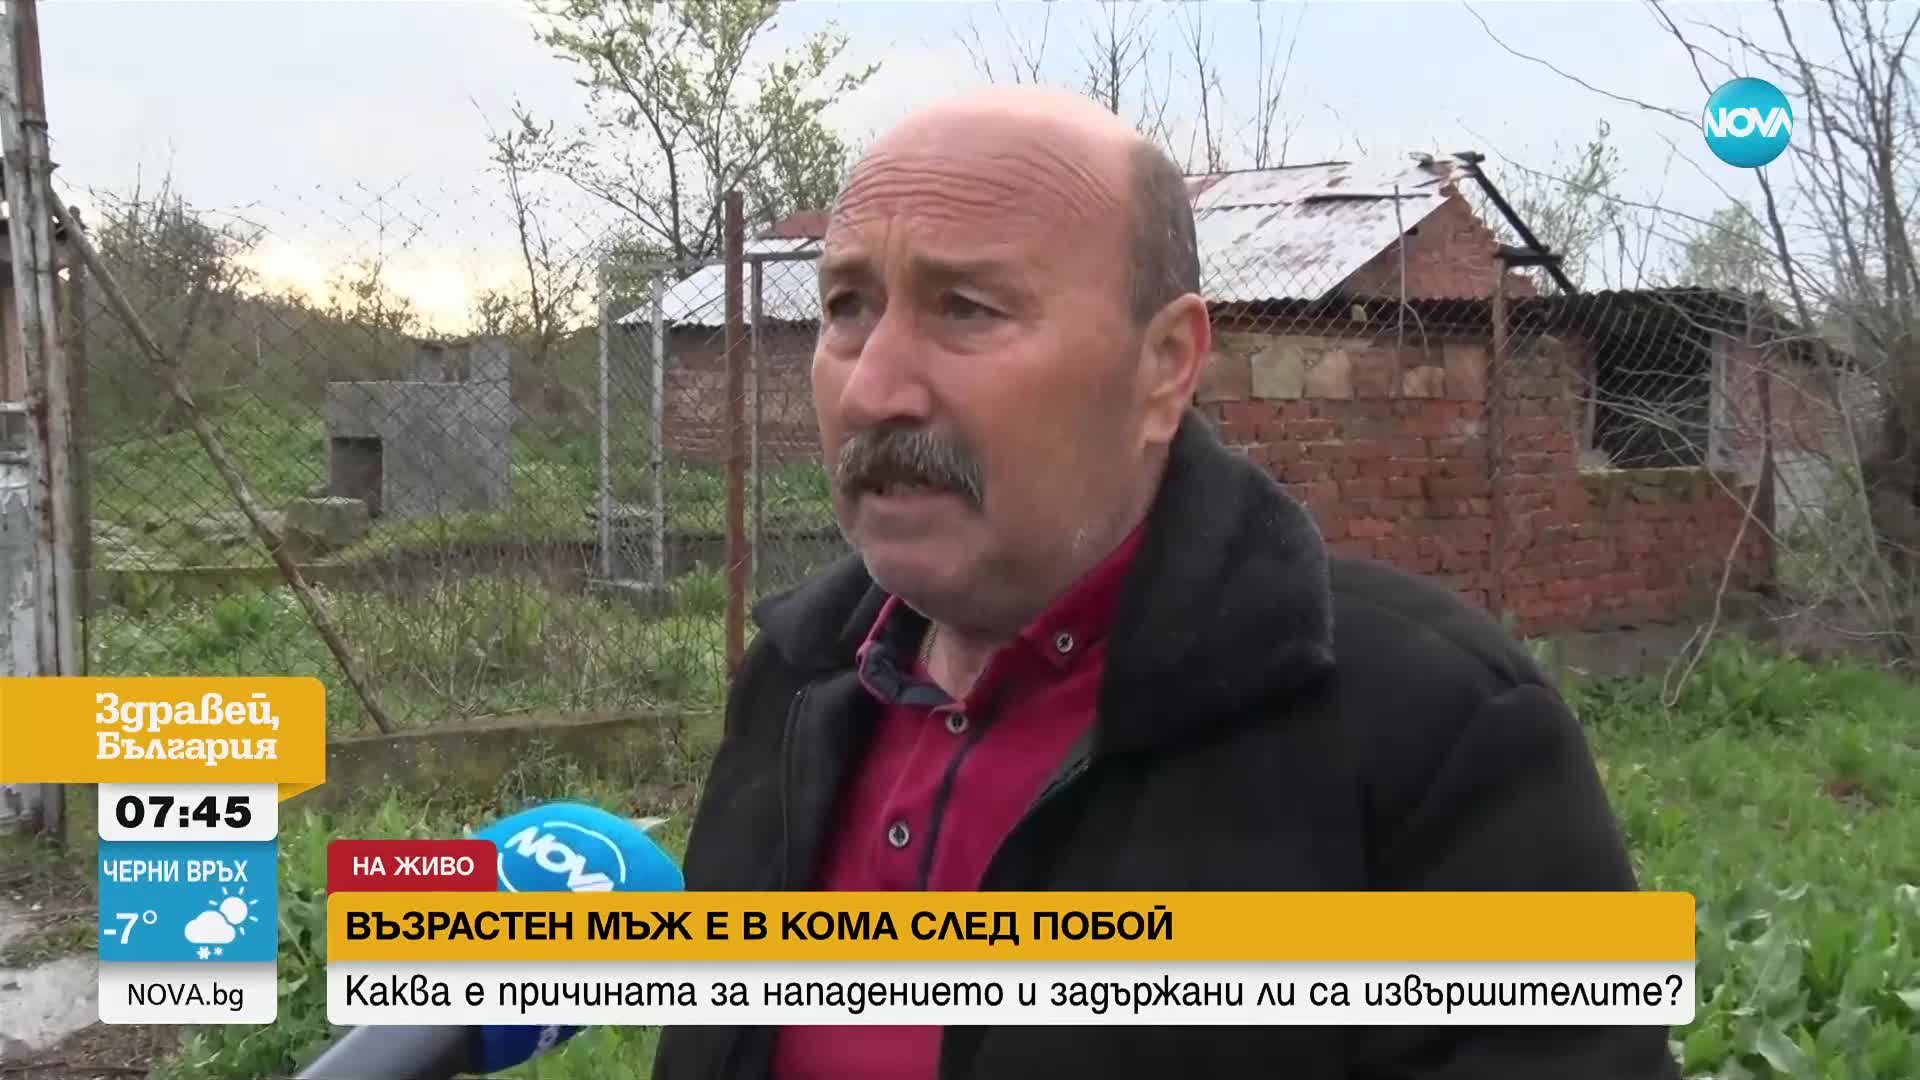 В КОМА ЗАРАДИ ЦИГАРА: Кой и защо преби почти до смърт възрастен мъж в Димитровградско?